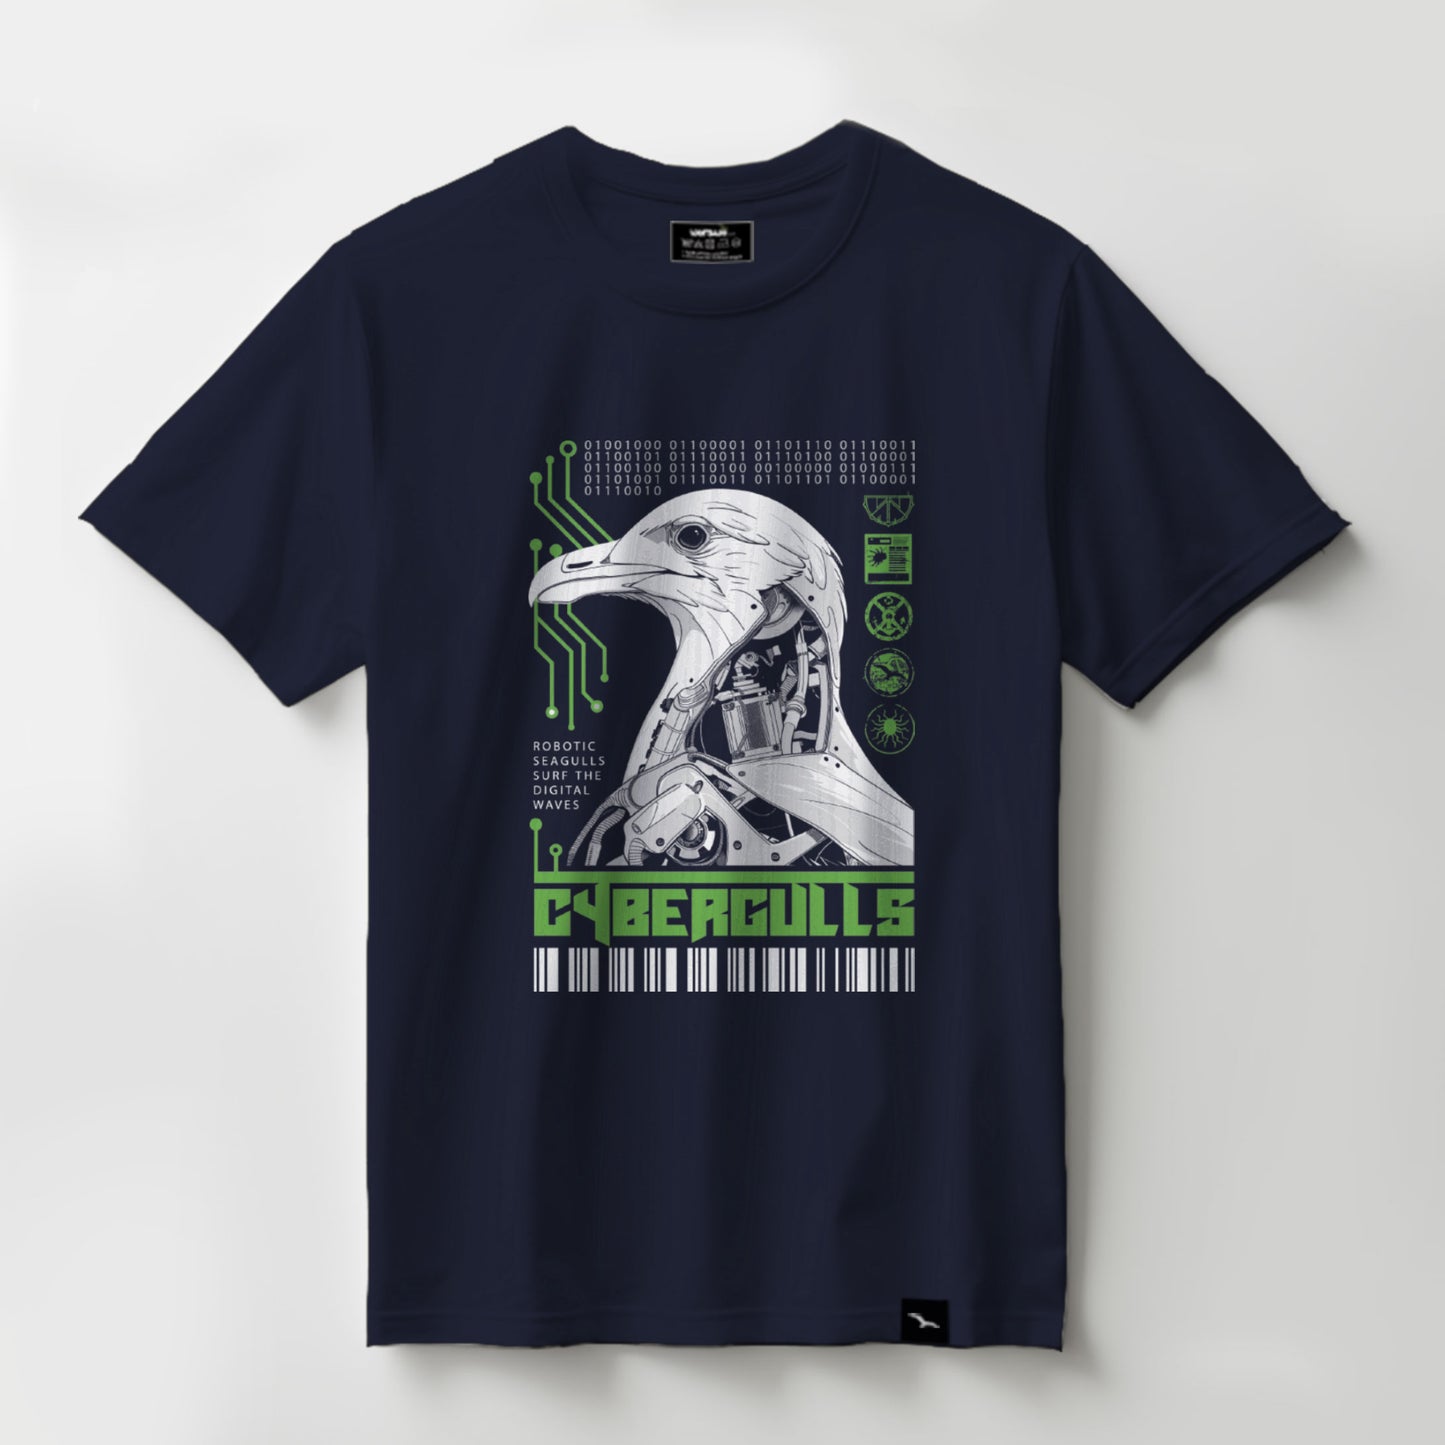 T-Shirt "Cybergulls"